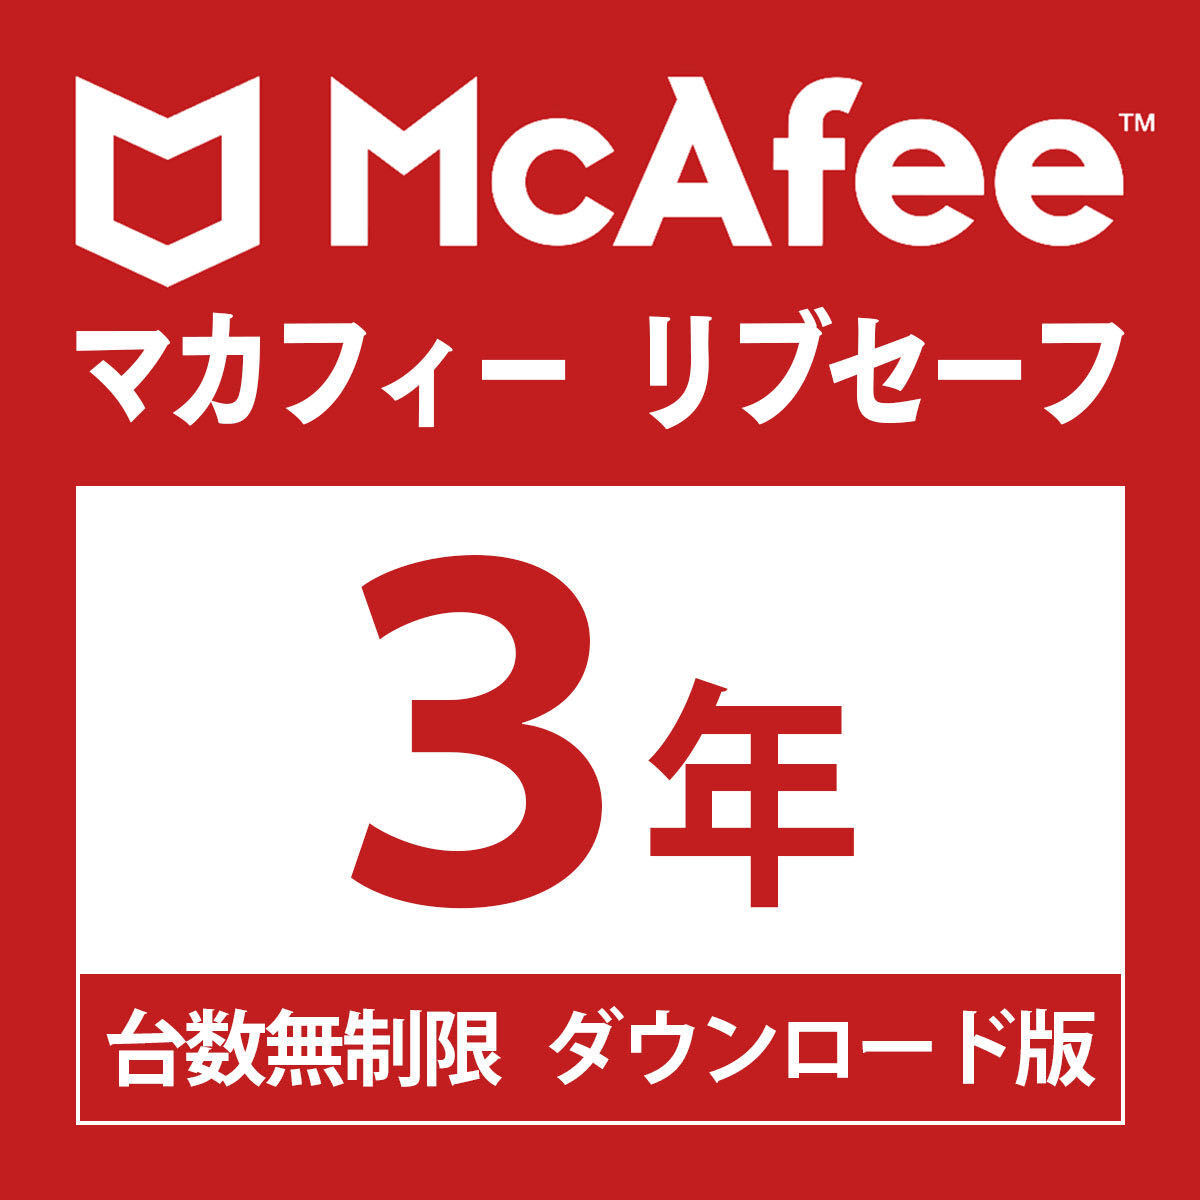  McAfee ребра safe новейший версия (3 год / шт. число безграничный ) [ online код версия ] Win/Mac/iOS/Android/ChromeOS соответствует anti u il s меры VPN DL версия 